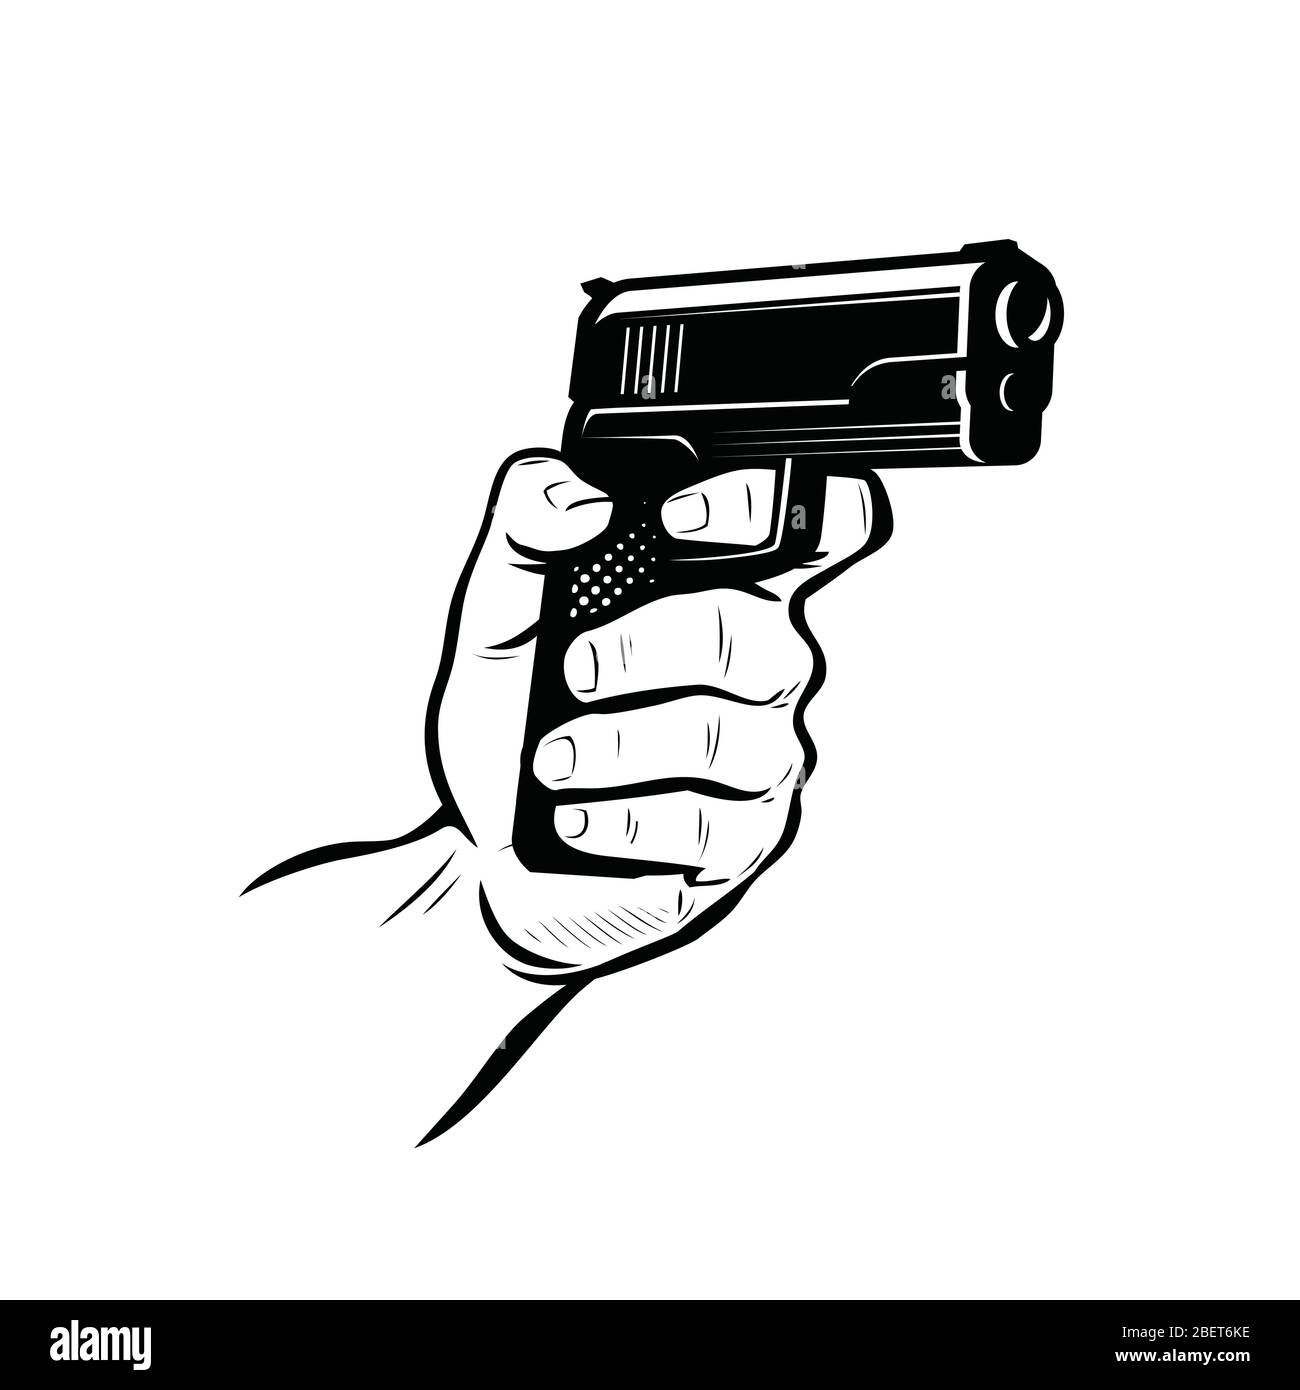 Gun in hand. Shooter sketch vector illustration Stock Vector